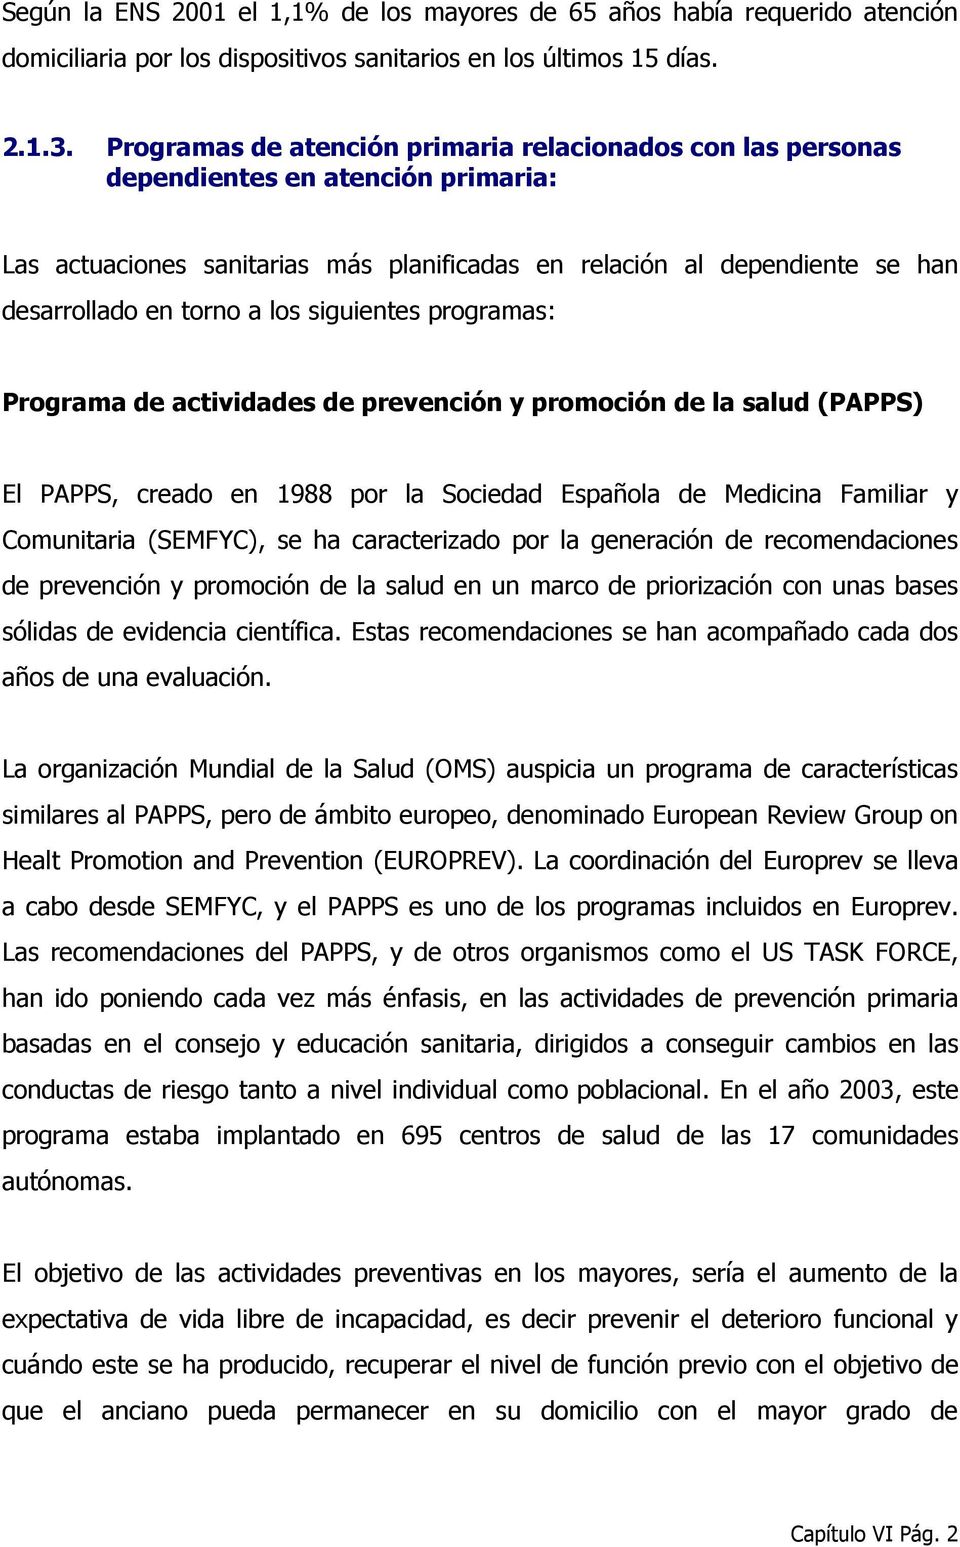 los siguientes programas: Programa de actividades de prevención y promoción de la salud (PAPPS) El PAPPS, creado en 1988 por la Sociedad Española de Medicina Familiar y Comunitaria (SEMFYC), se ha